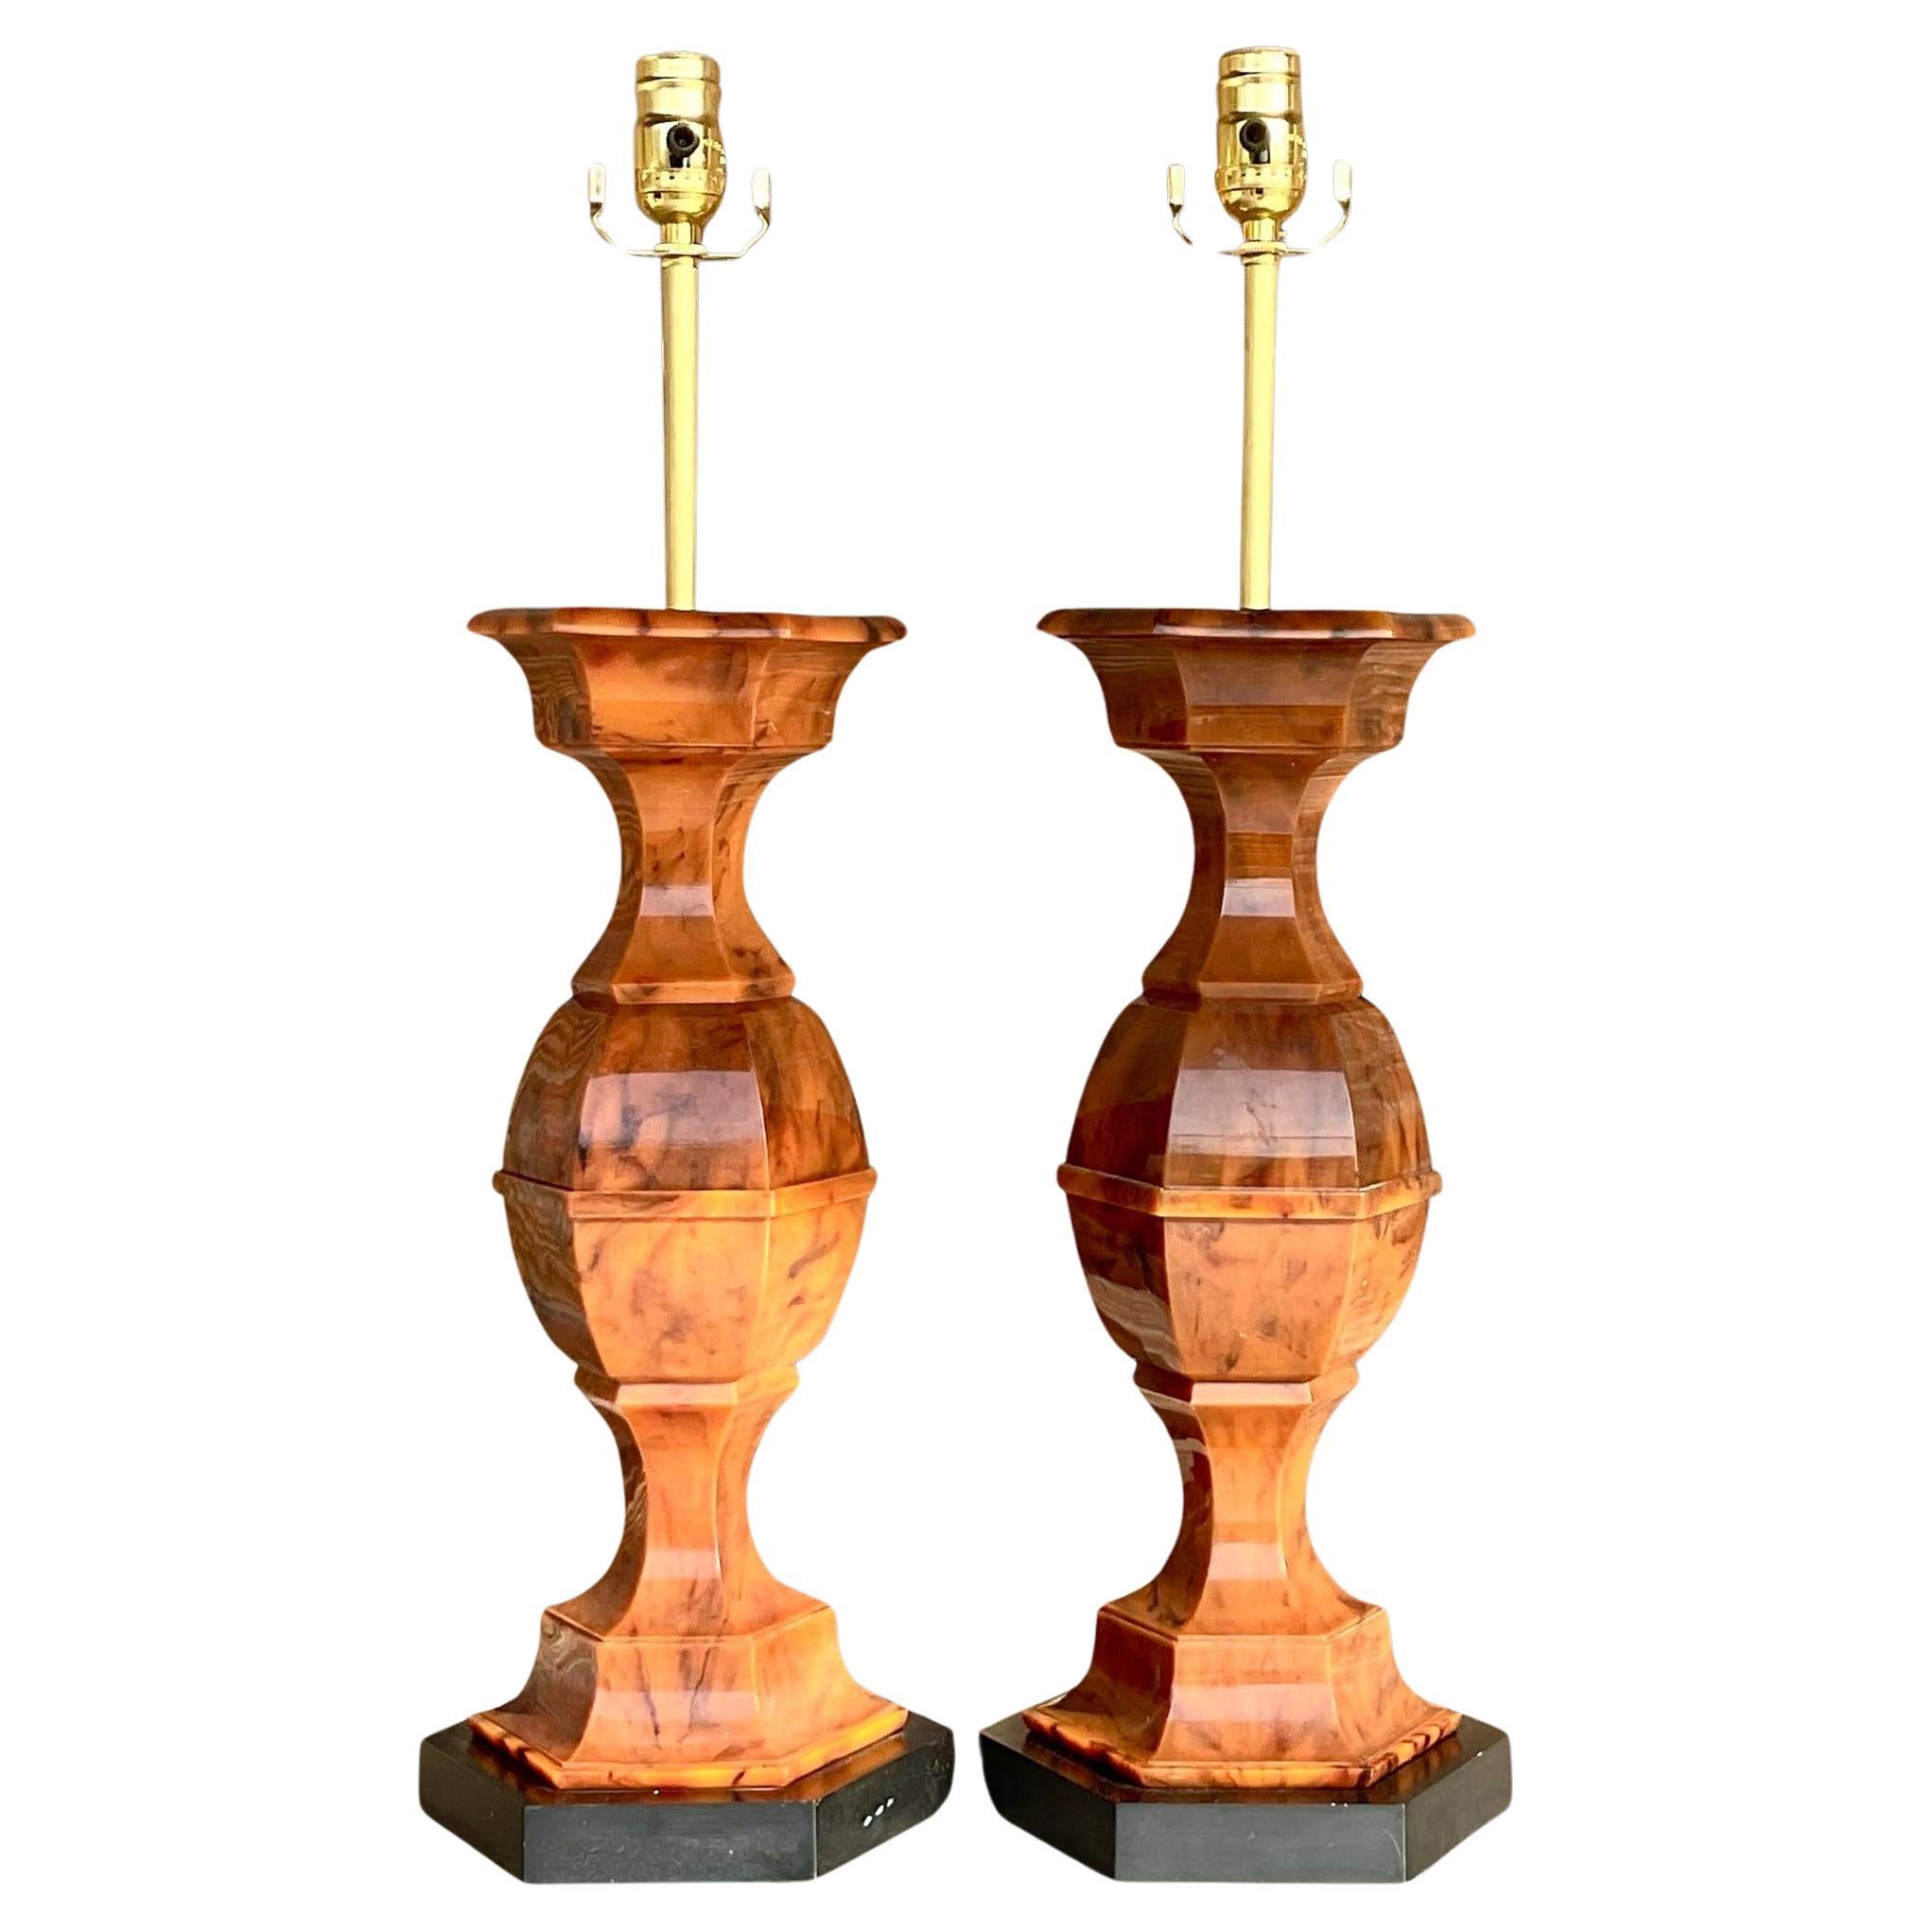 Vintage Bakelite Hourglass Lamp - a Pair